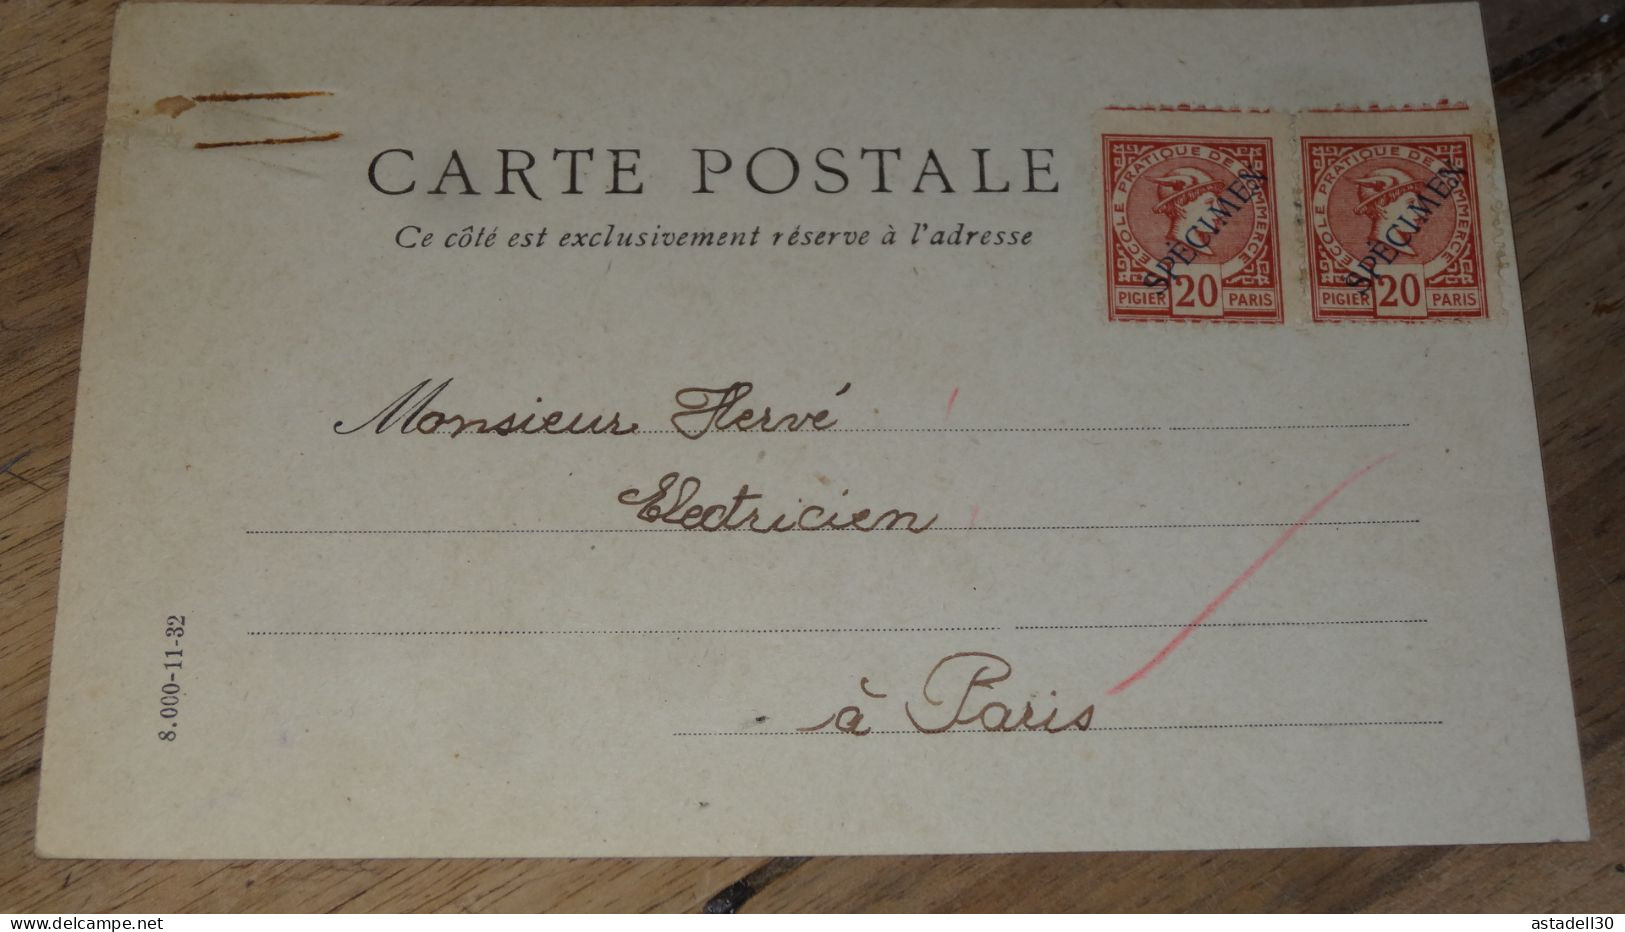 Carte Postale Fictif, Specimen, Ecole Commerce, Paire De 20c - 1934 ......... ..... 240424 ....... CL-12-10 - Ficticios